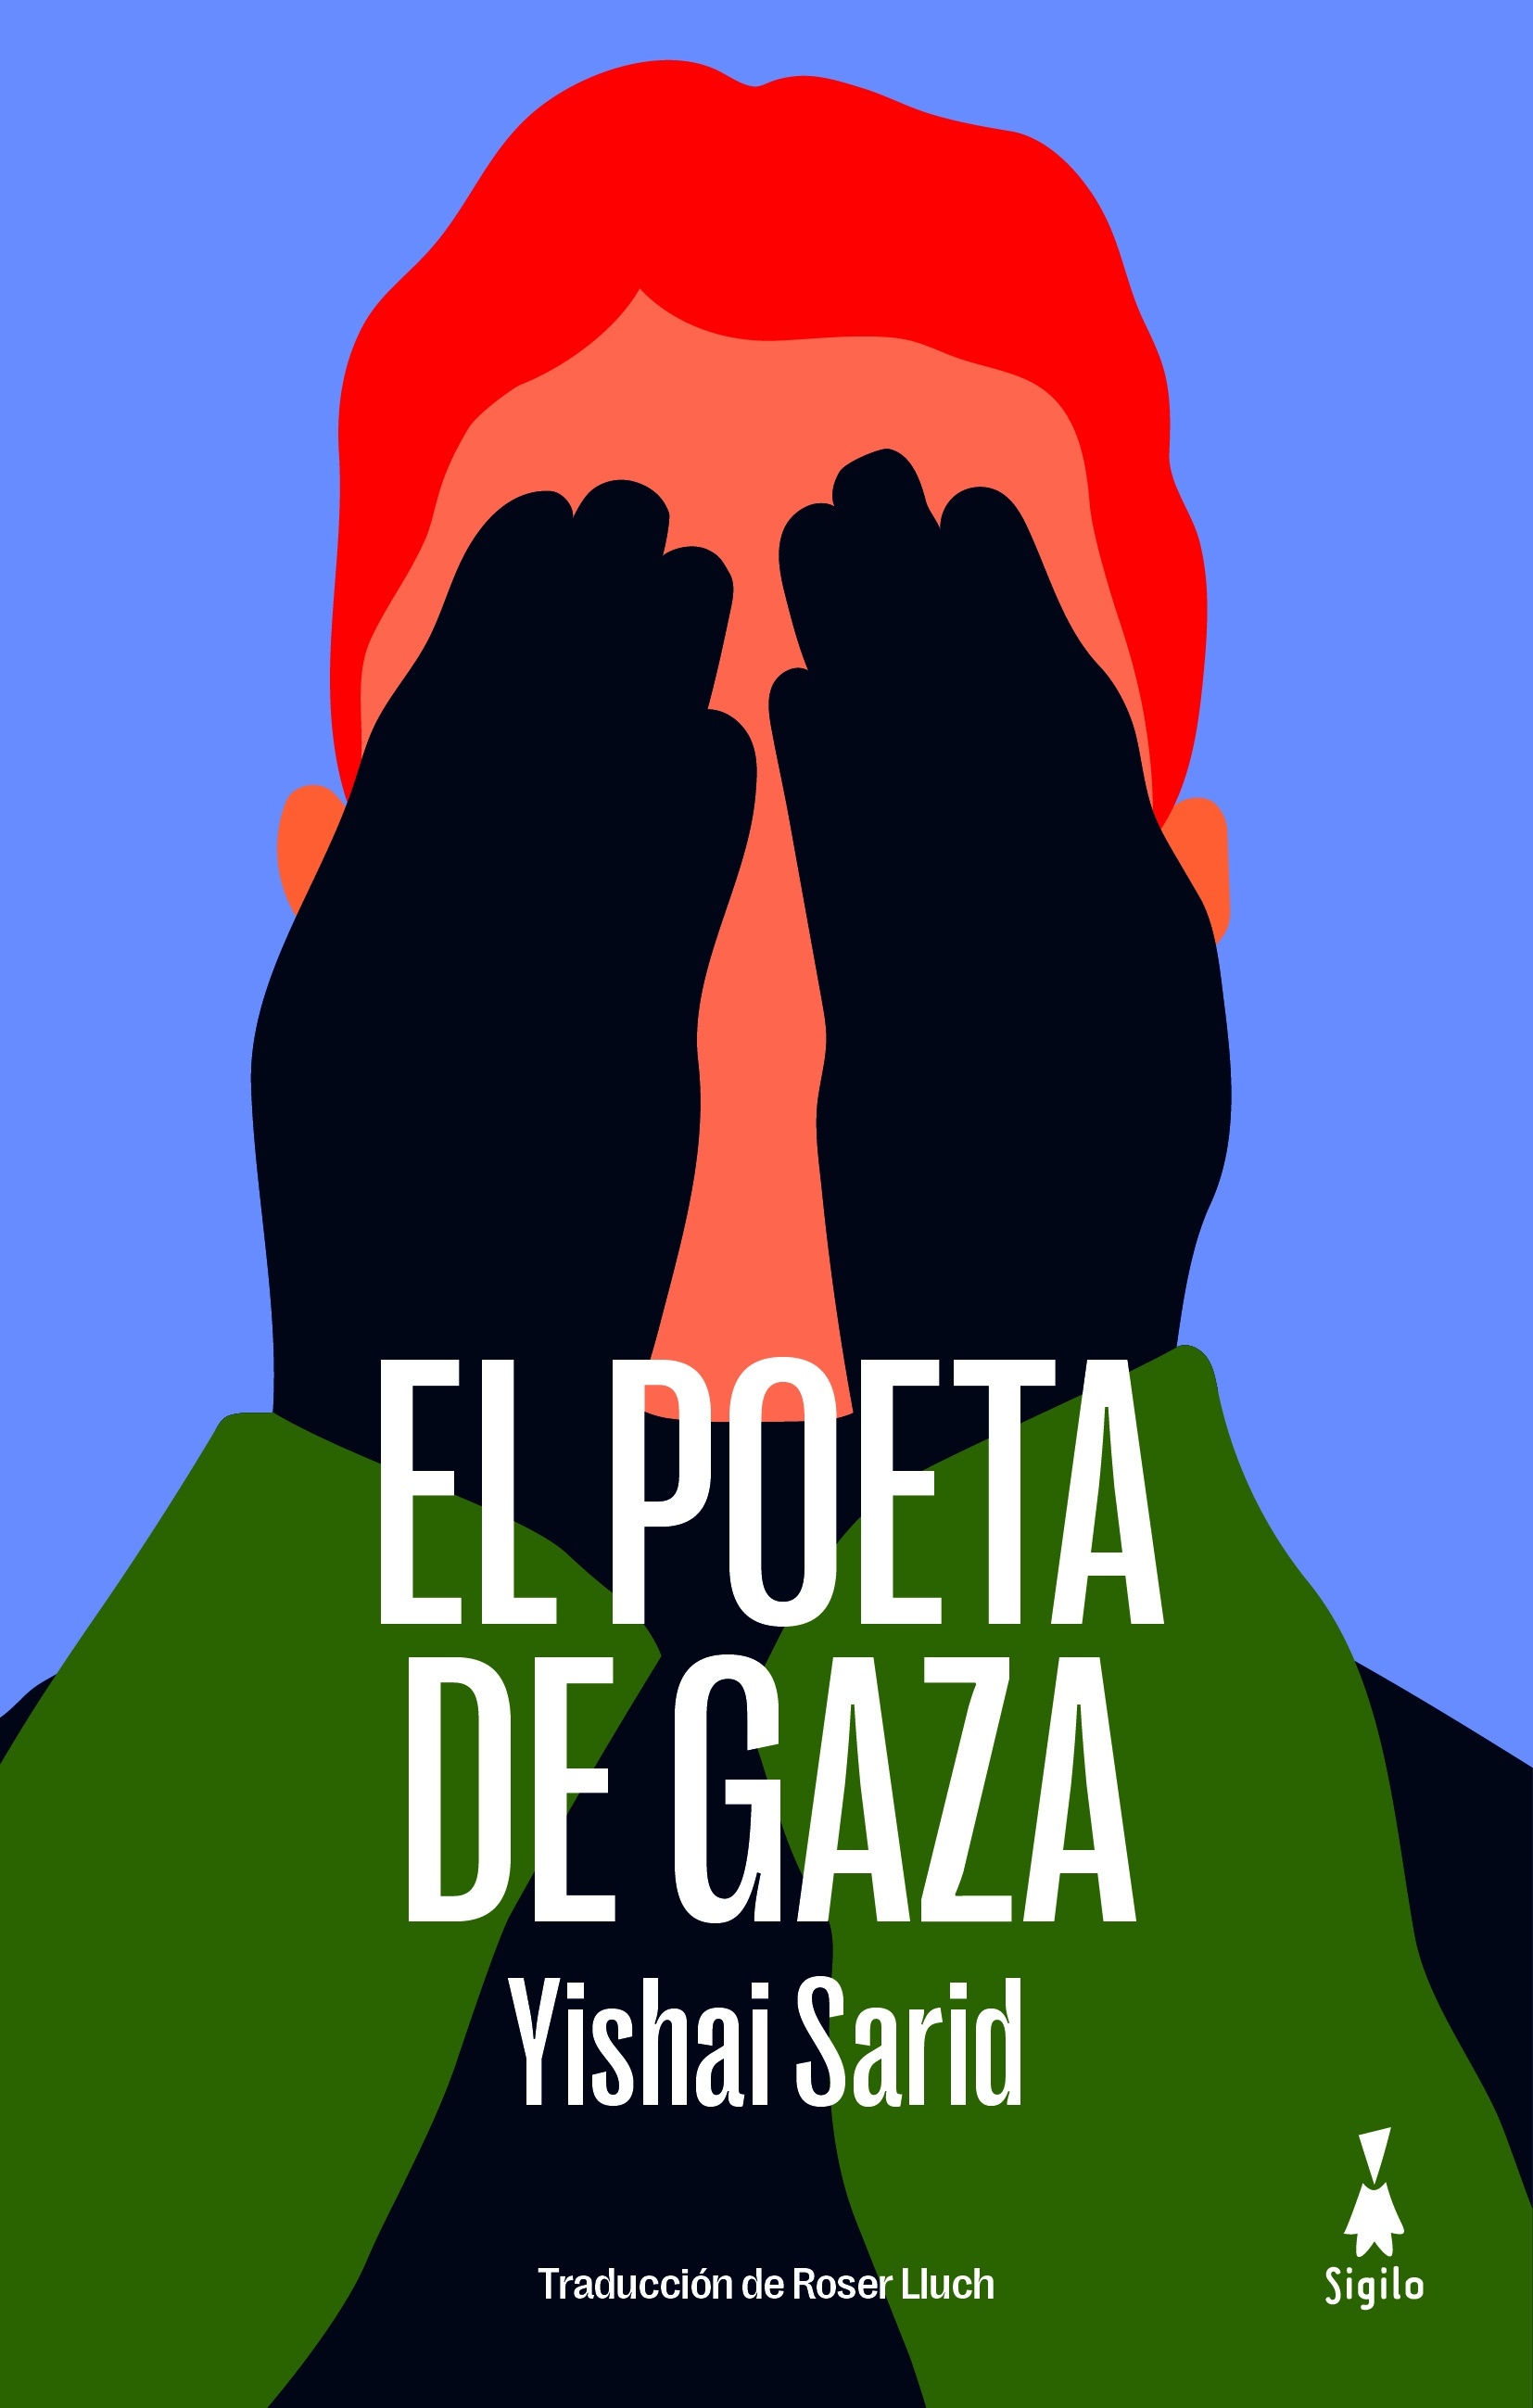 Poeta de Gaza, El. 